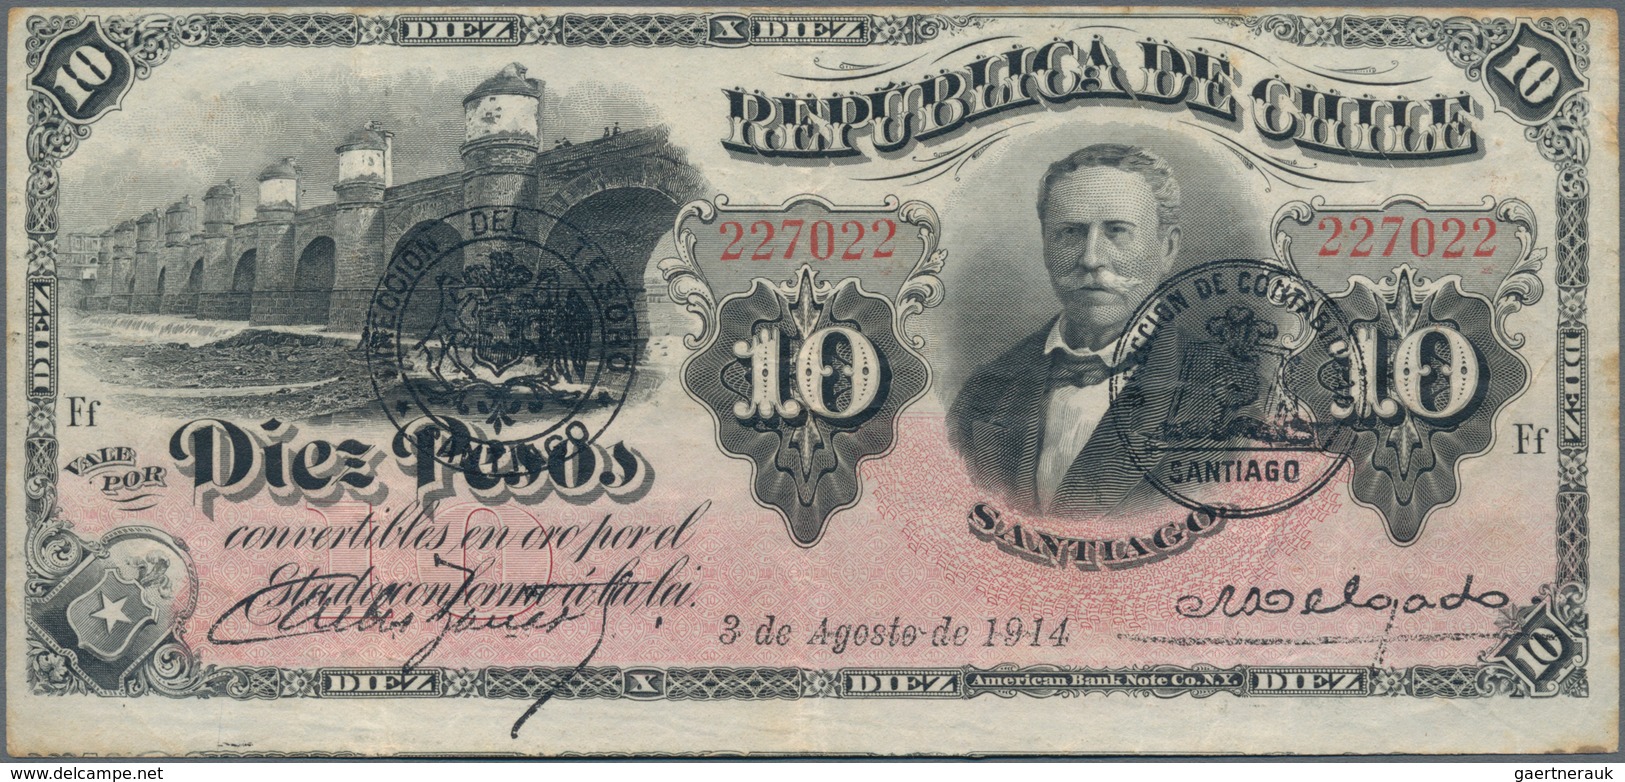 Chile: Republica De Chile 10 Pesos 1914, P.21b, Beautiful Banknote, Still In Good Condition With Bri - Chile